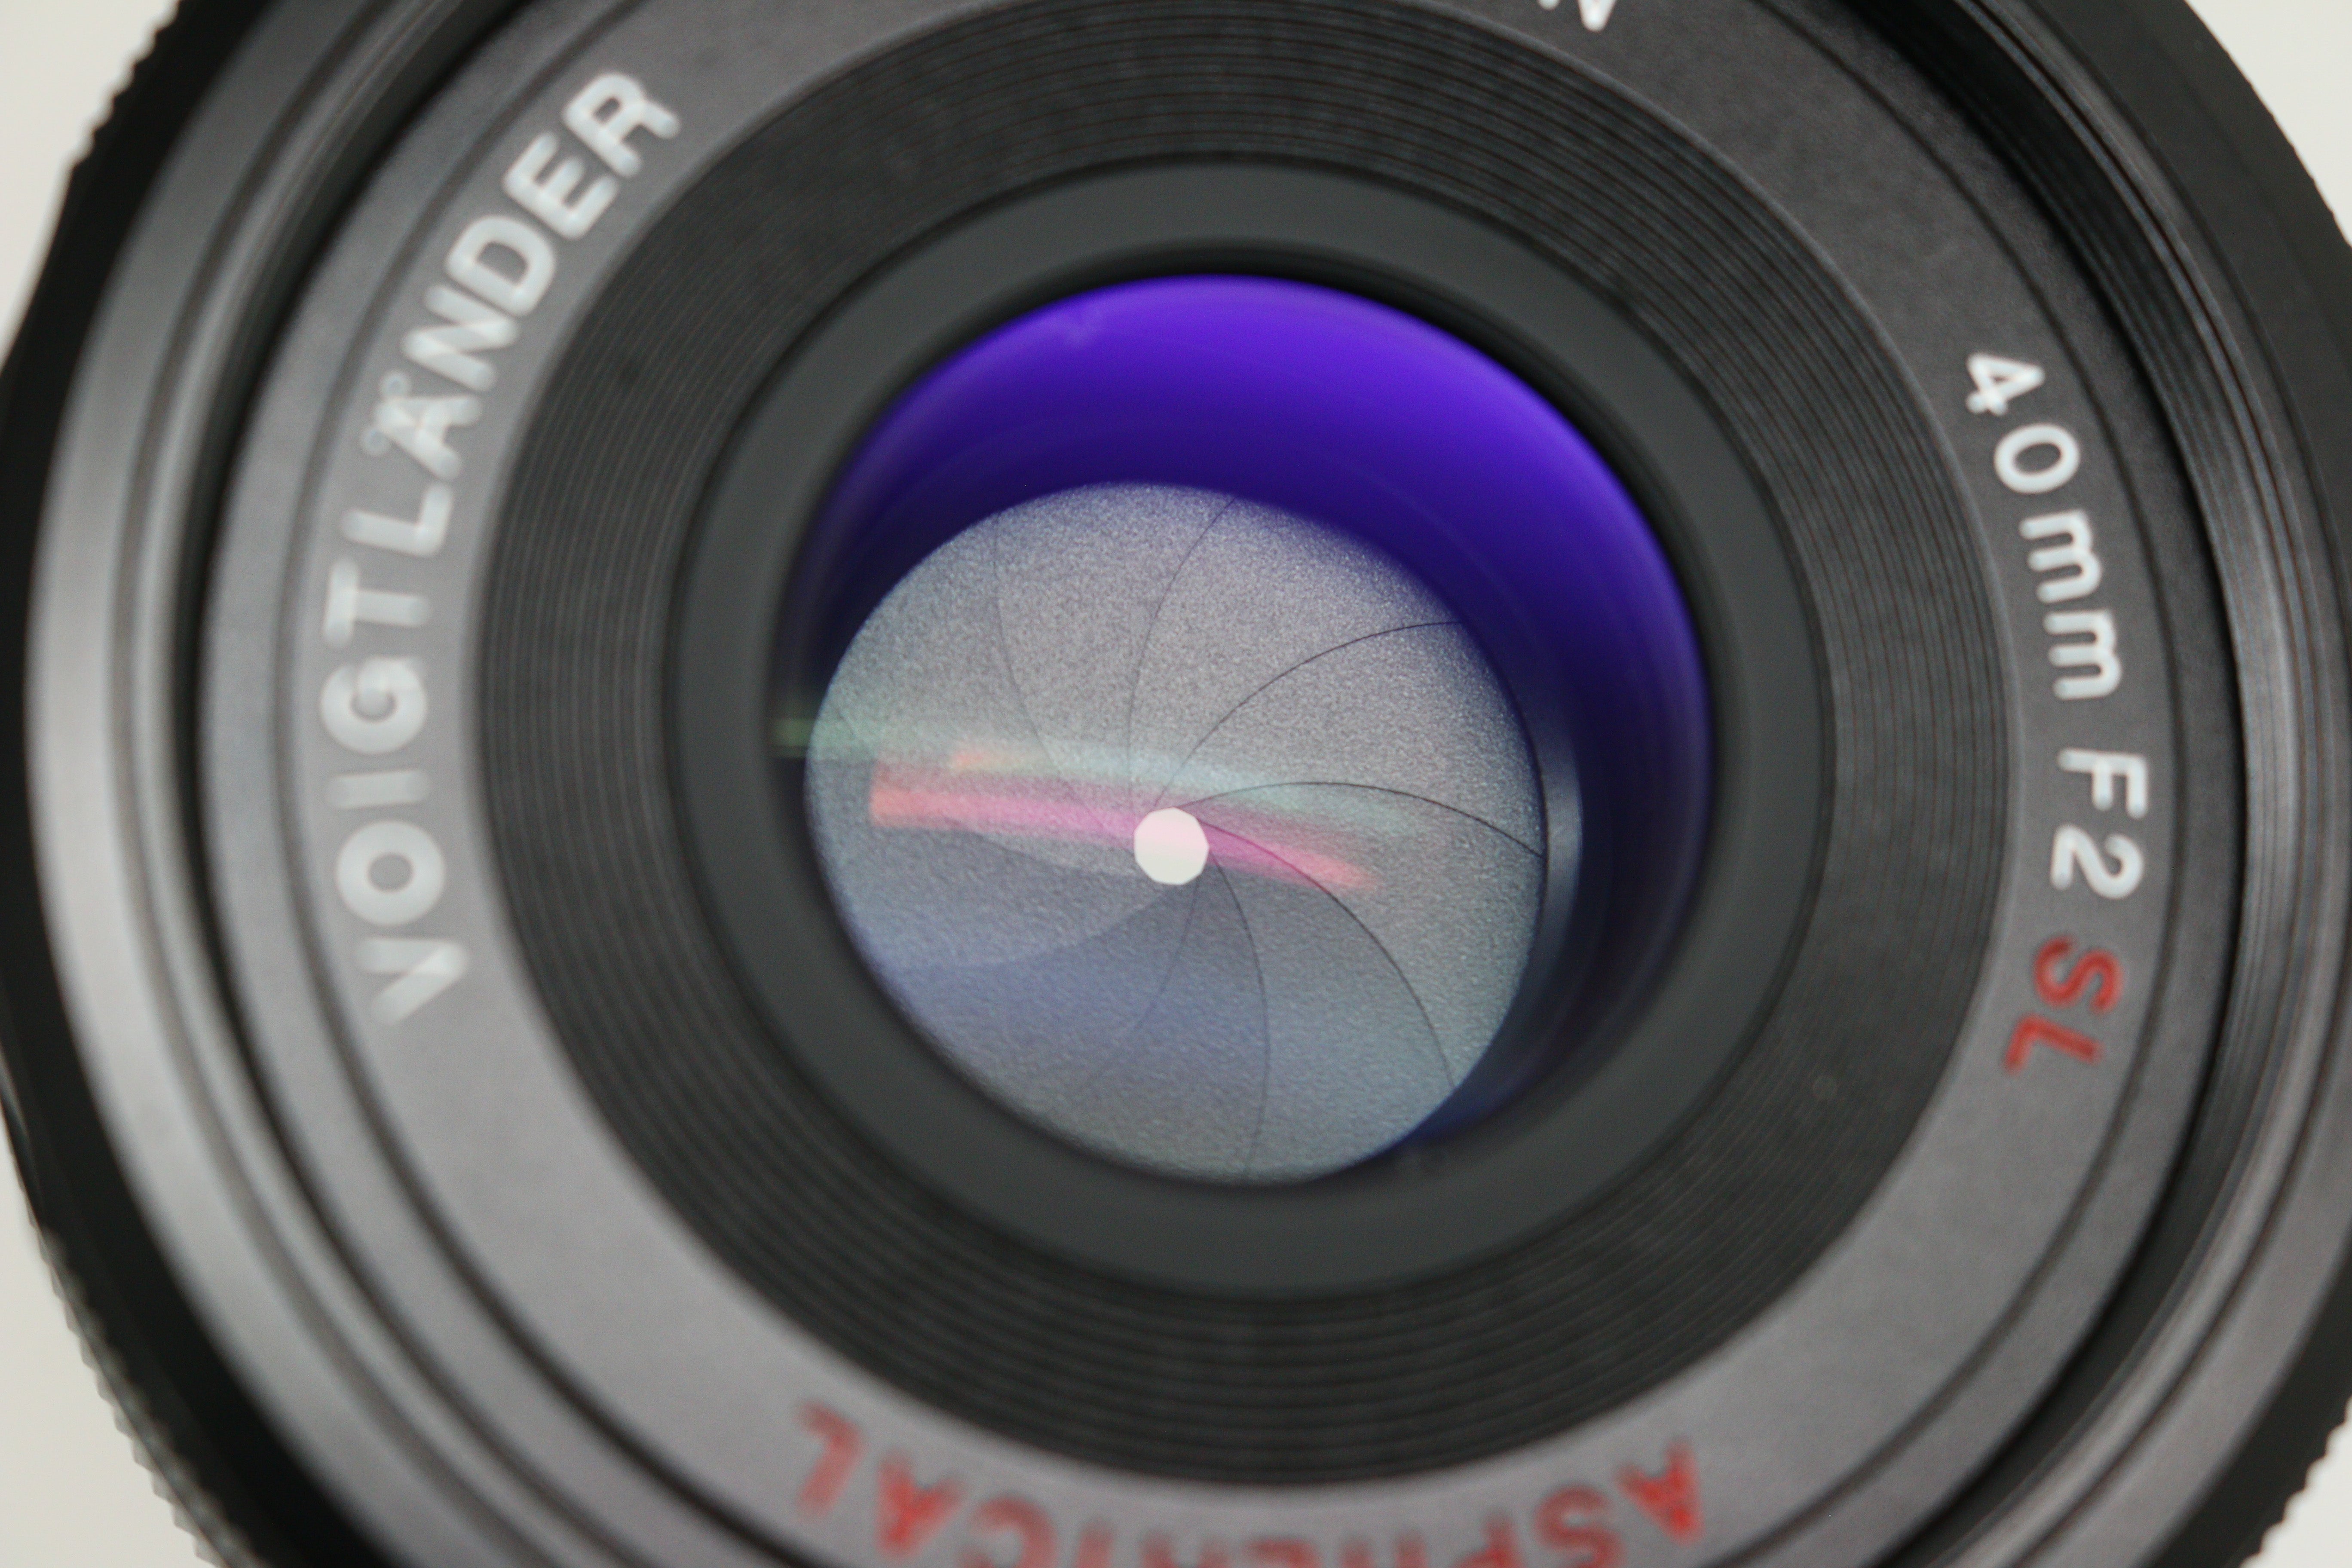 Voigtländer 40mm f/2 SL-II N Aspherical Lens (Nikon F-Mount)